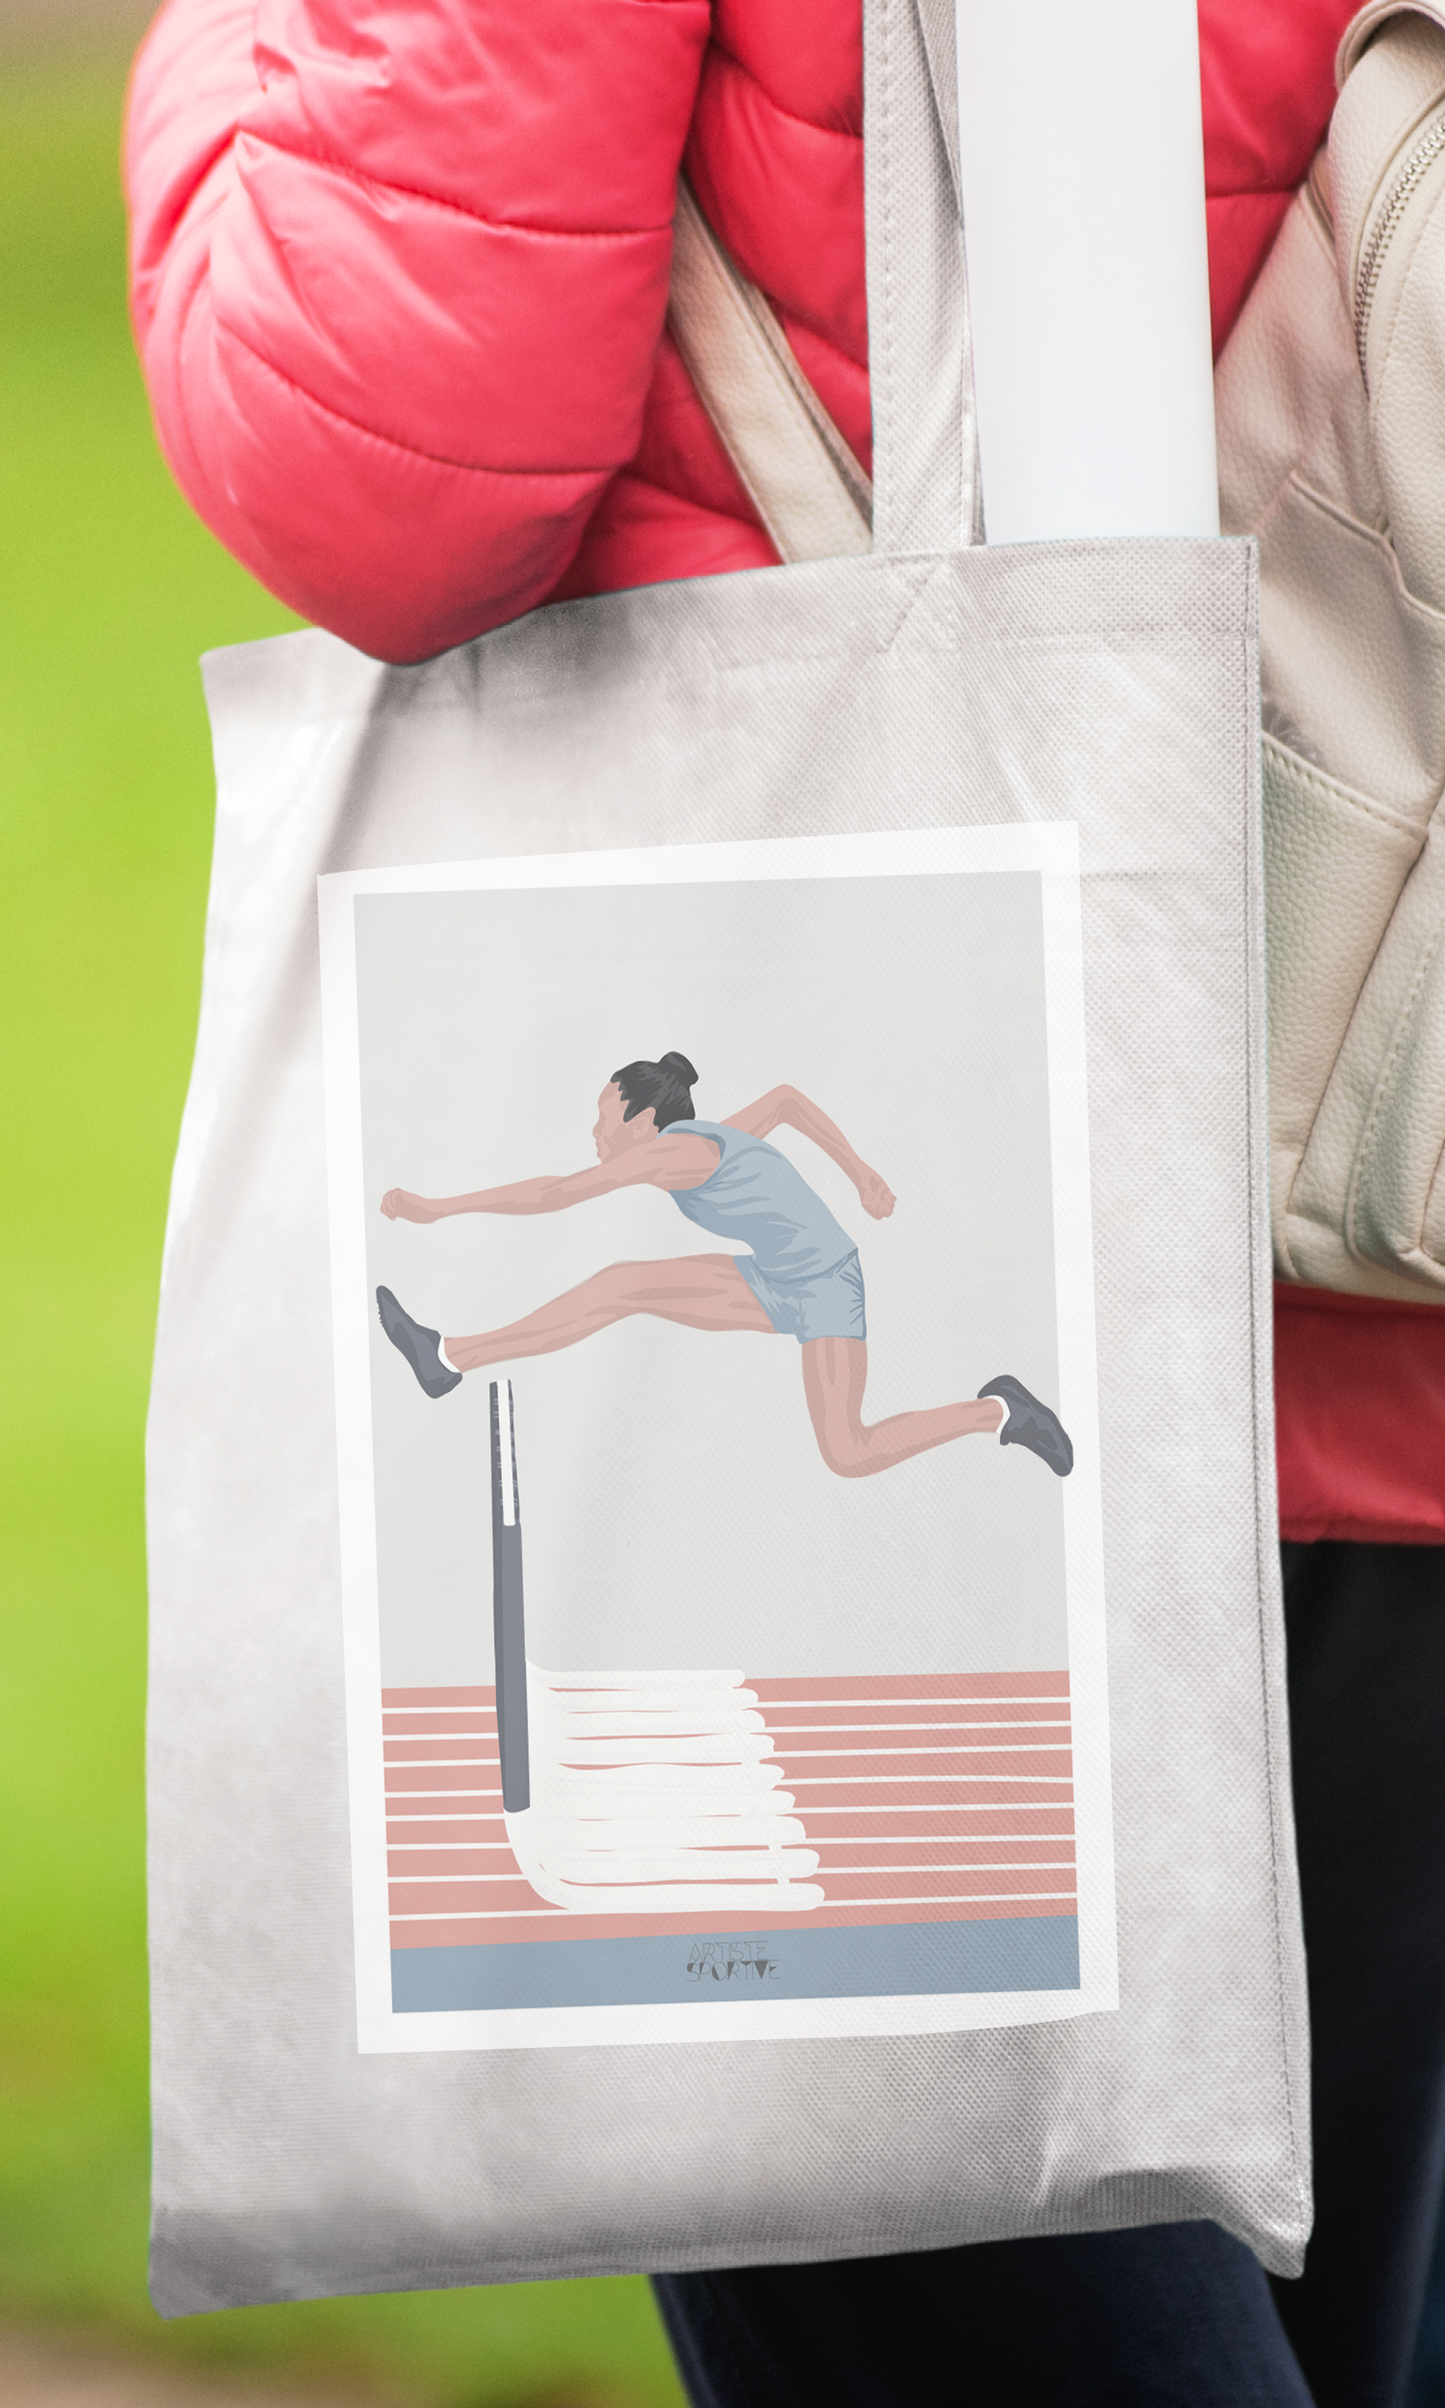 Tote bag or athletic bag "women's hurdle jump"